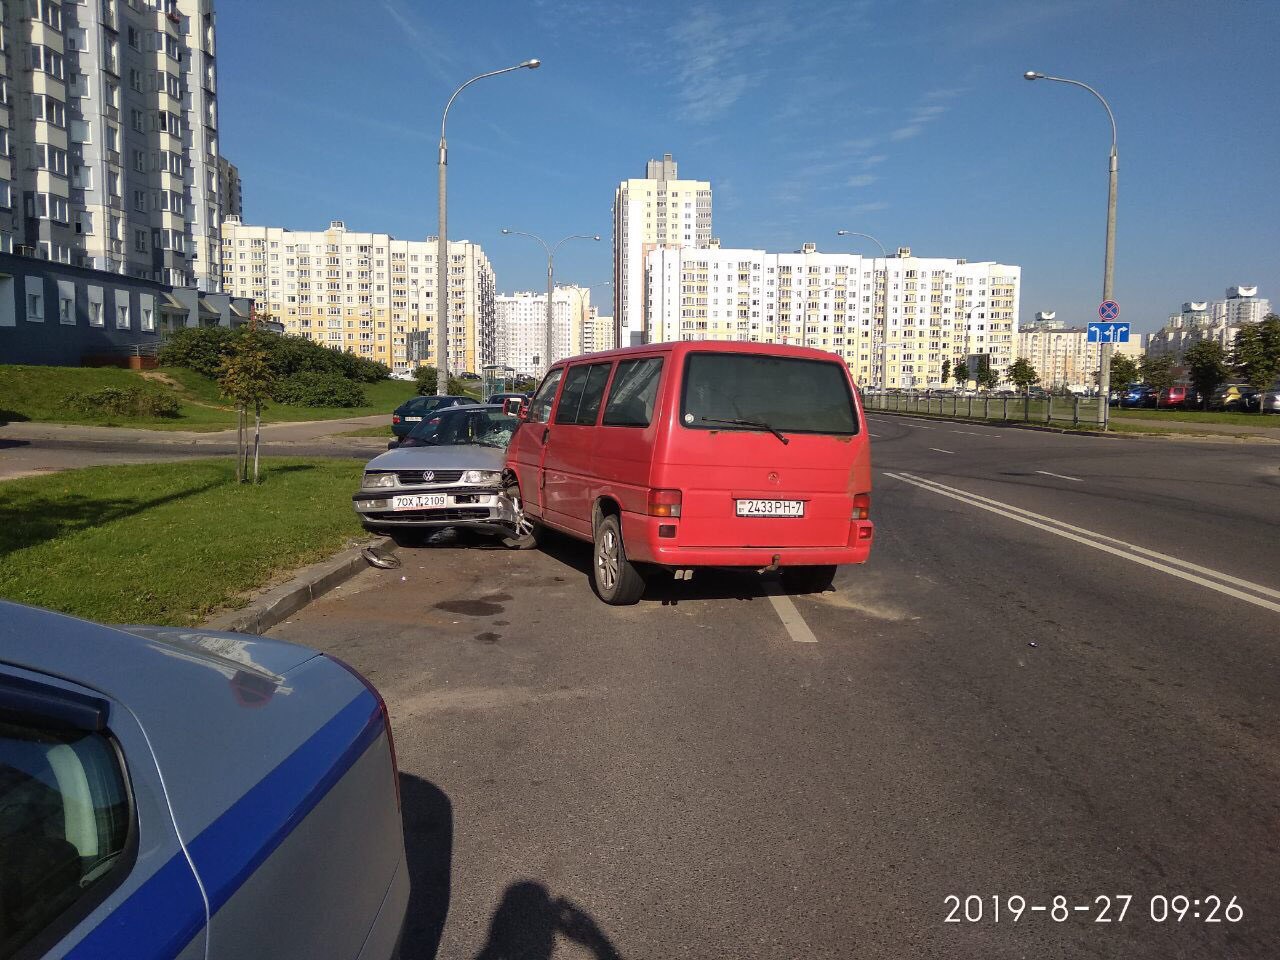 Голый мужчина бегал по улице после в ДТП в Минске